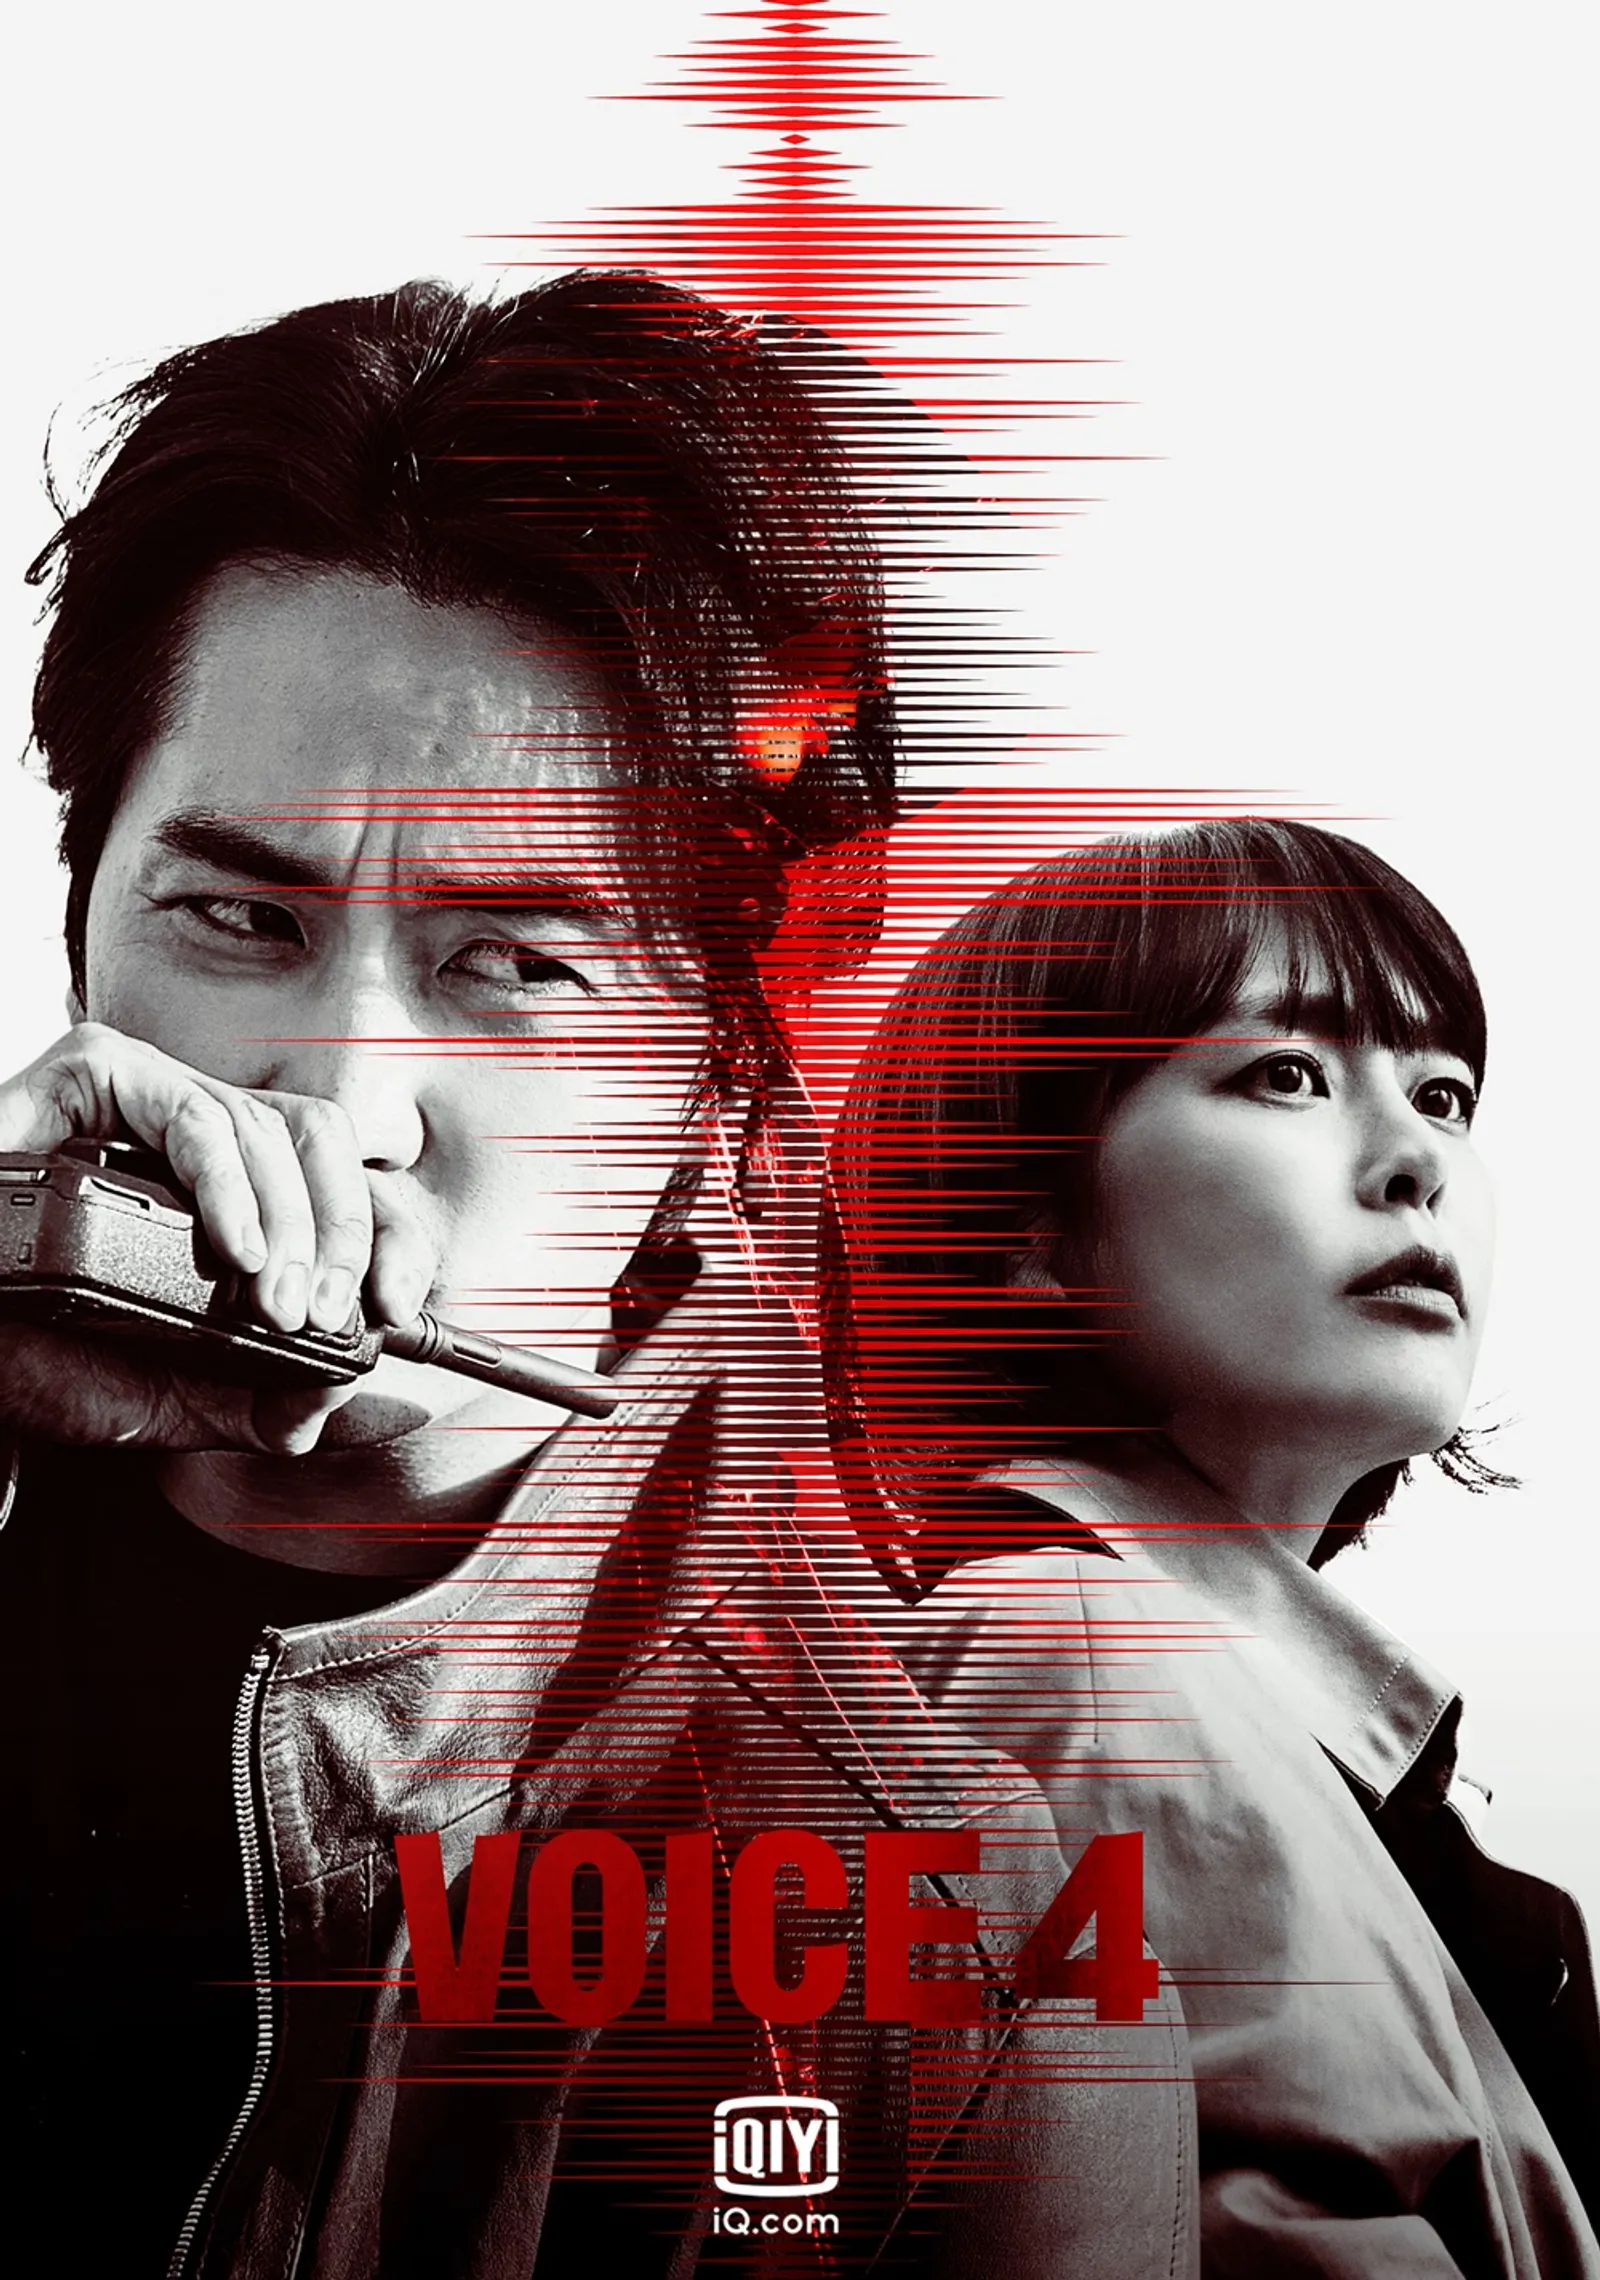 Pengakuan Jujur Song Seung-heon Soal Peran Detektif di 'Voice 4'